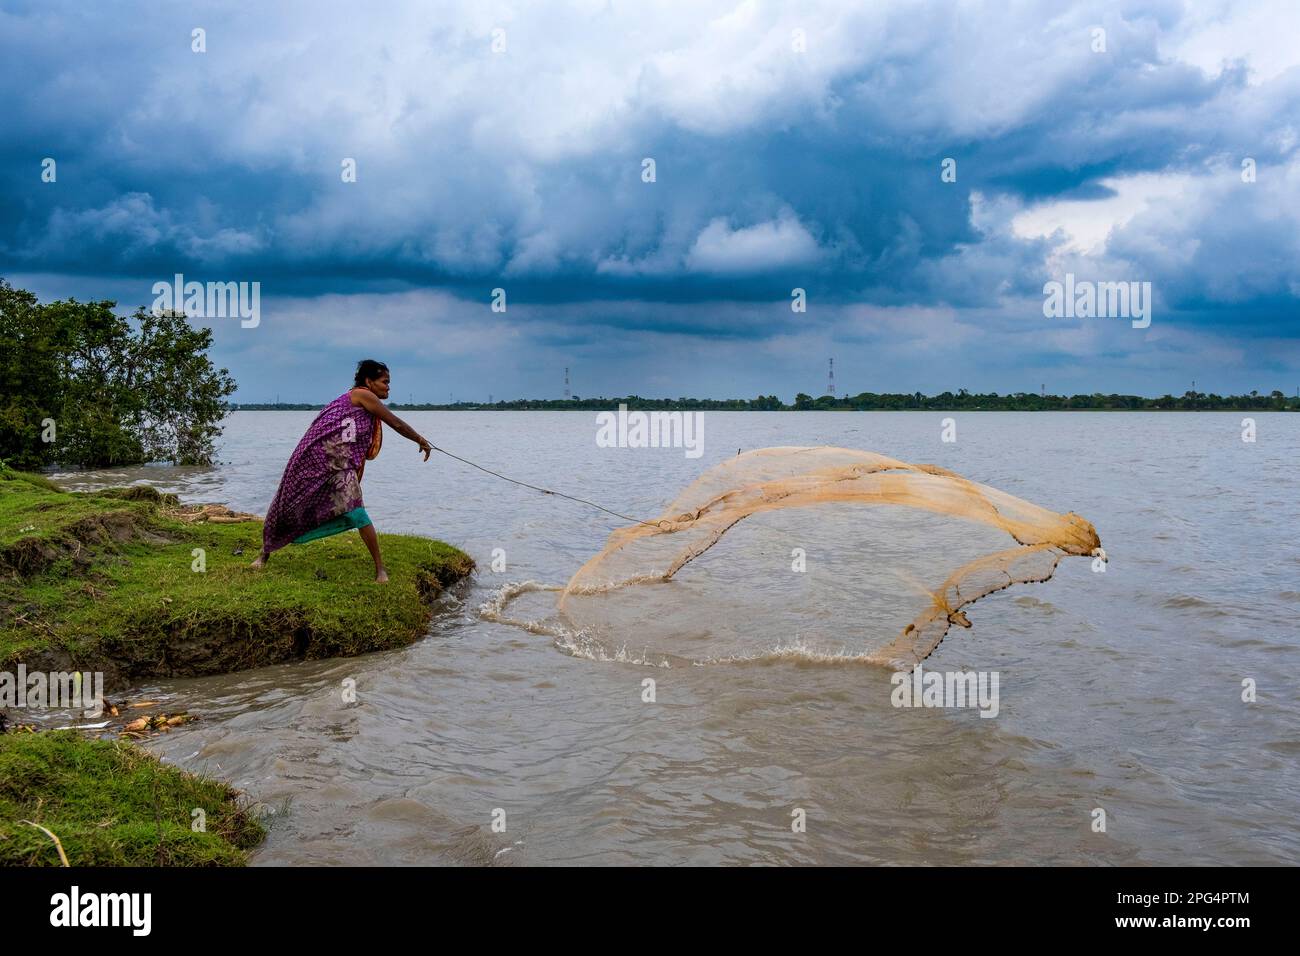 20. März 2023, West Tootpara, Khulna, Bangladesch: Die Bilder werden aus der südlichen Küstenregion Bangladeschs gemacht. Die Hauptbeschäftigung der Menschen in diesem Gebiet ist die Fischzucht und das Fischen vom Fluss aus. Die meisten Frauen in diesem Bereich sind in diesem Beruf tätig. Frauen aus einkommensschwachen Familien verdienen ihren Lebensunterhalt, indem sie in Flüssen fischen und Garnelen fangen. Da die meisten Familien und Frauen an der Südküste im Fischereigeschäft der Region tätig sind und die meisten Frauen unabhängig sind und auch die Wirtschaft des Landes beeinflussen. (Kreditbild: © Md Harun Oder Ra Stockfoto